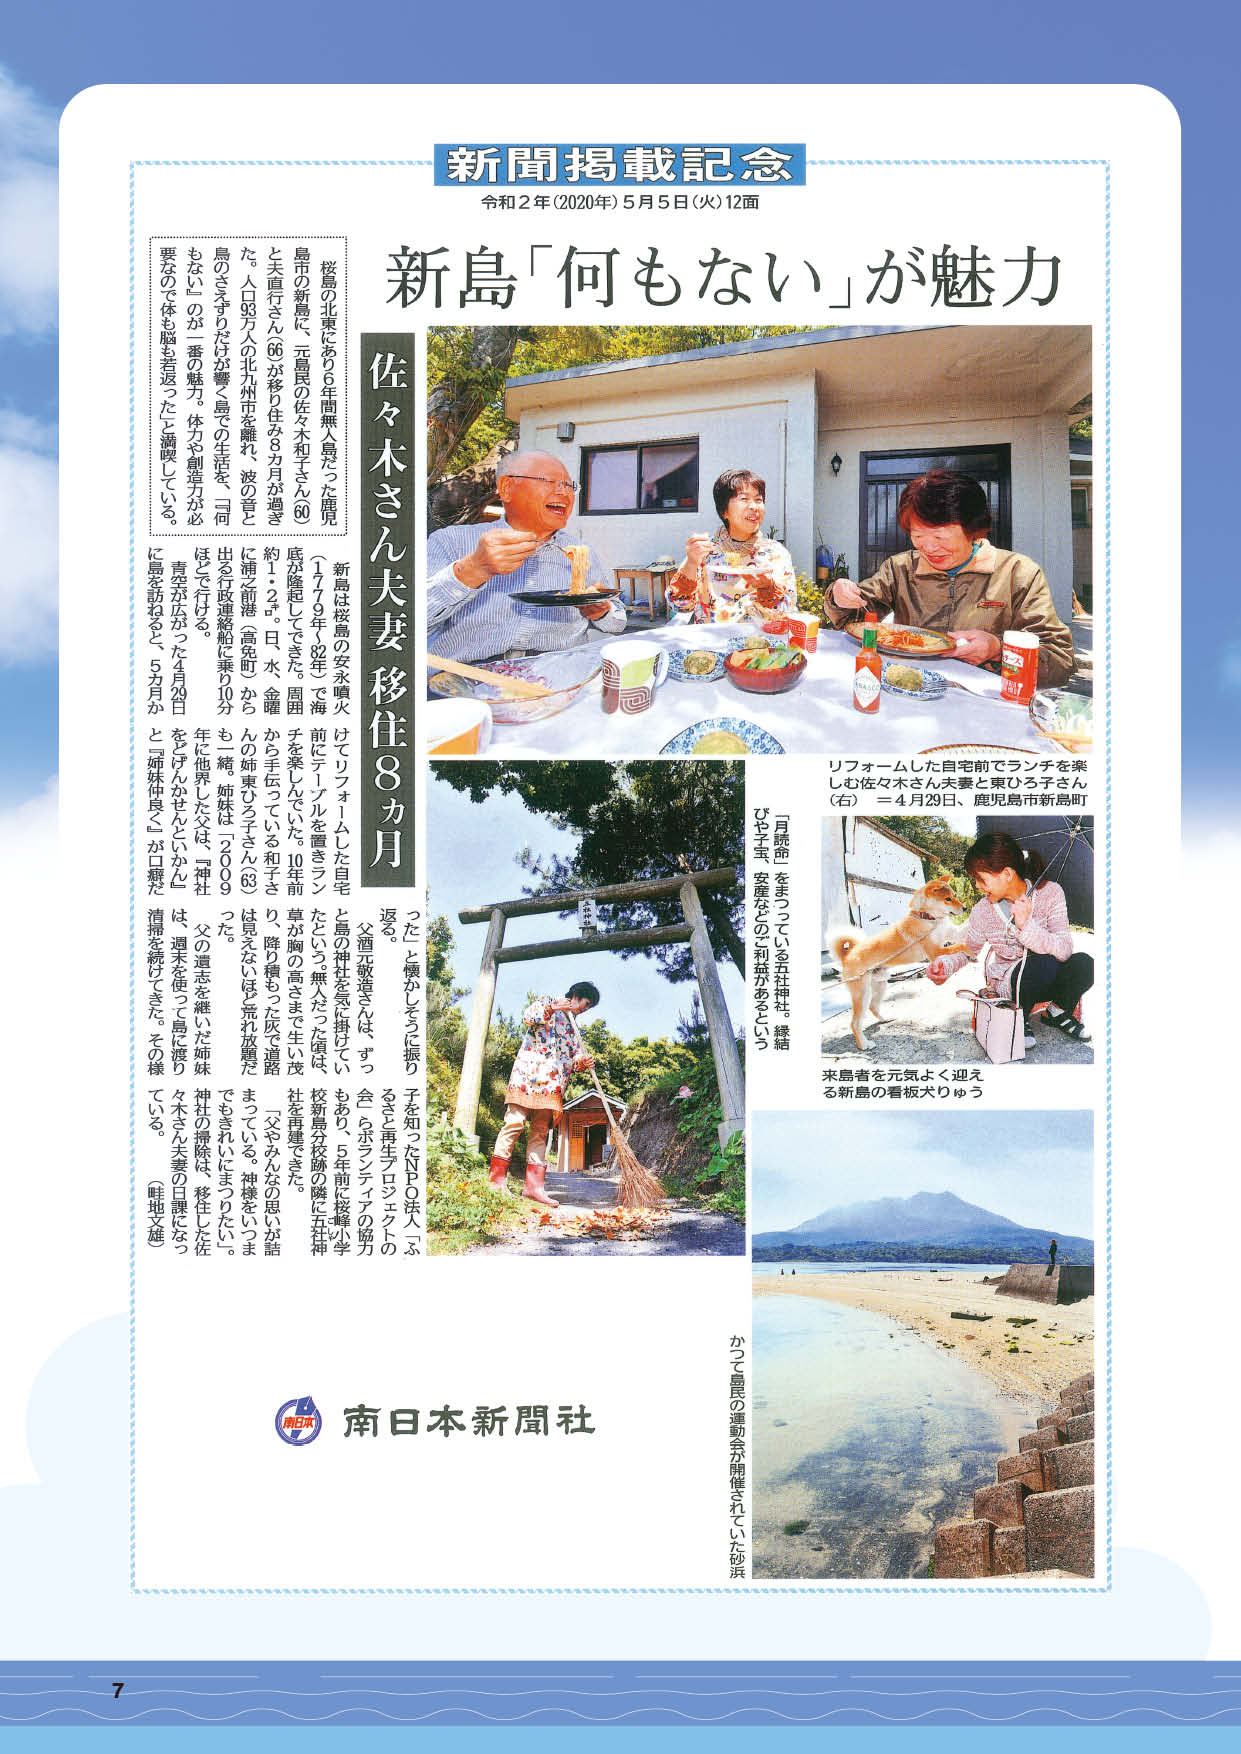 鹿児島錦江湾に浮かぶ新島に避難所兼カフェを建設